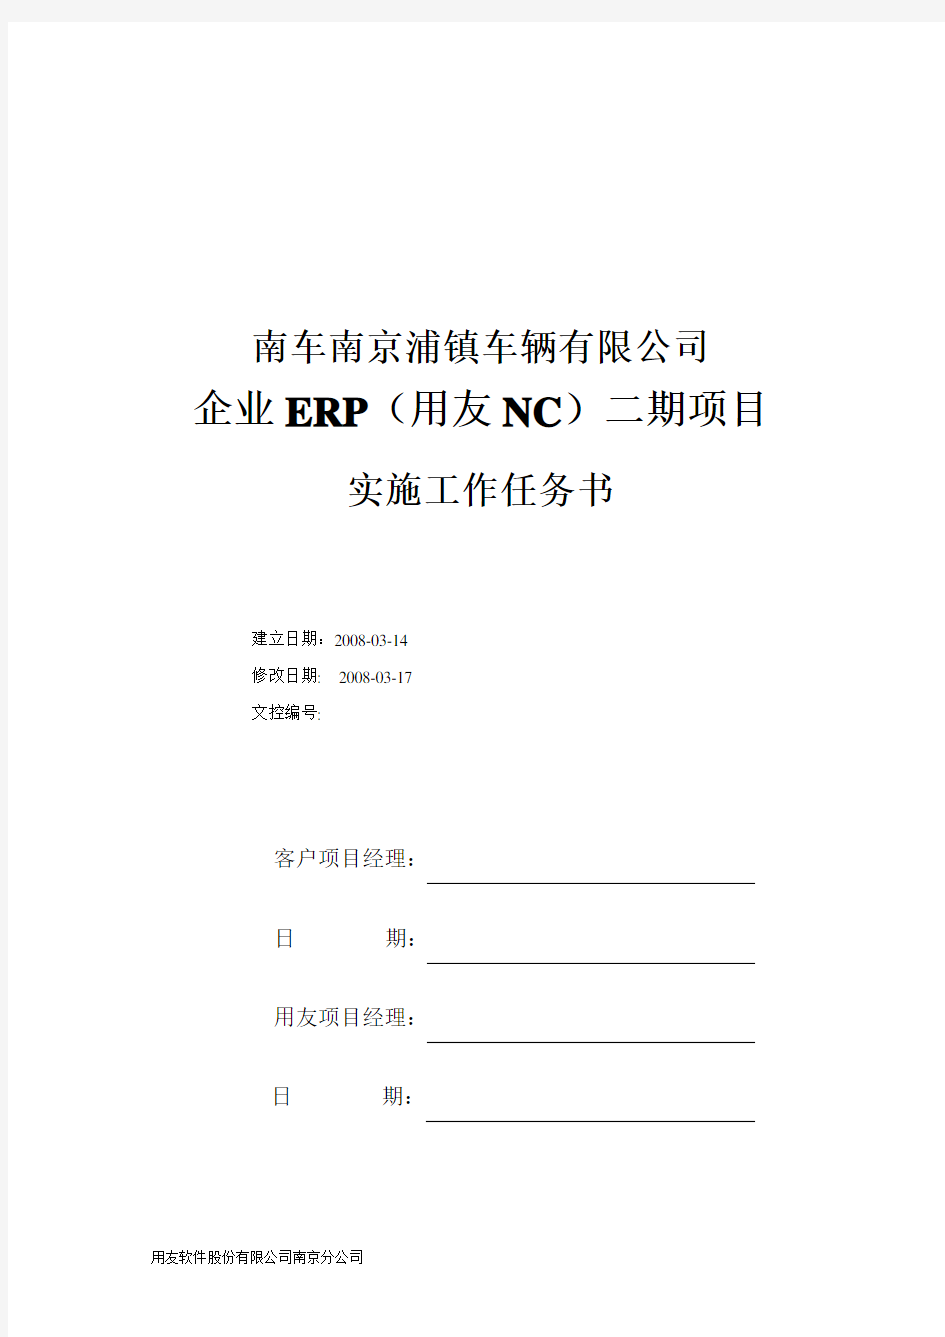 企业ERP(用友NC)二期项目实施工作任务书